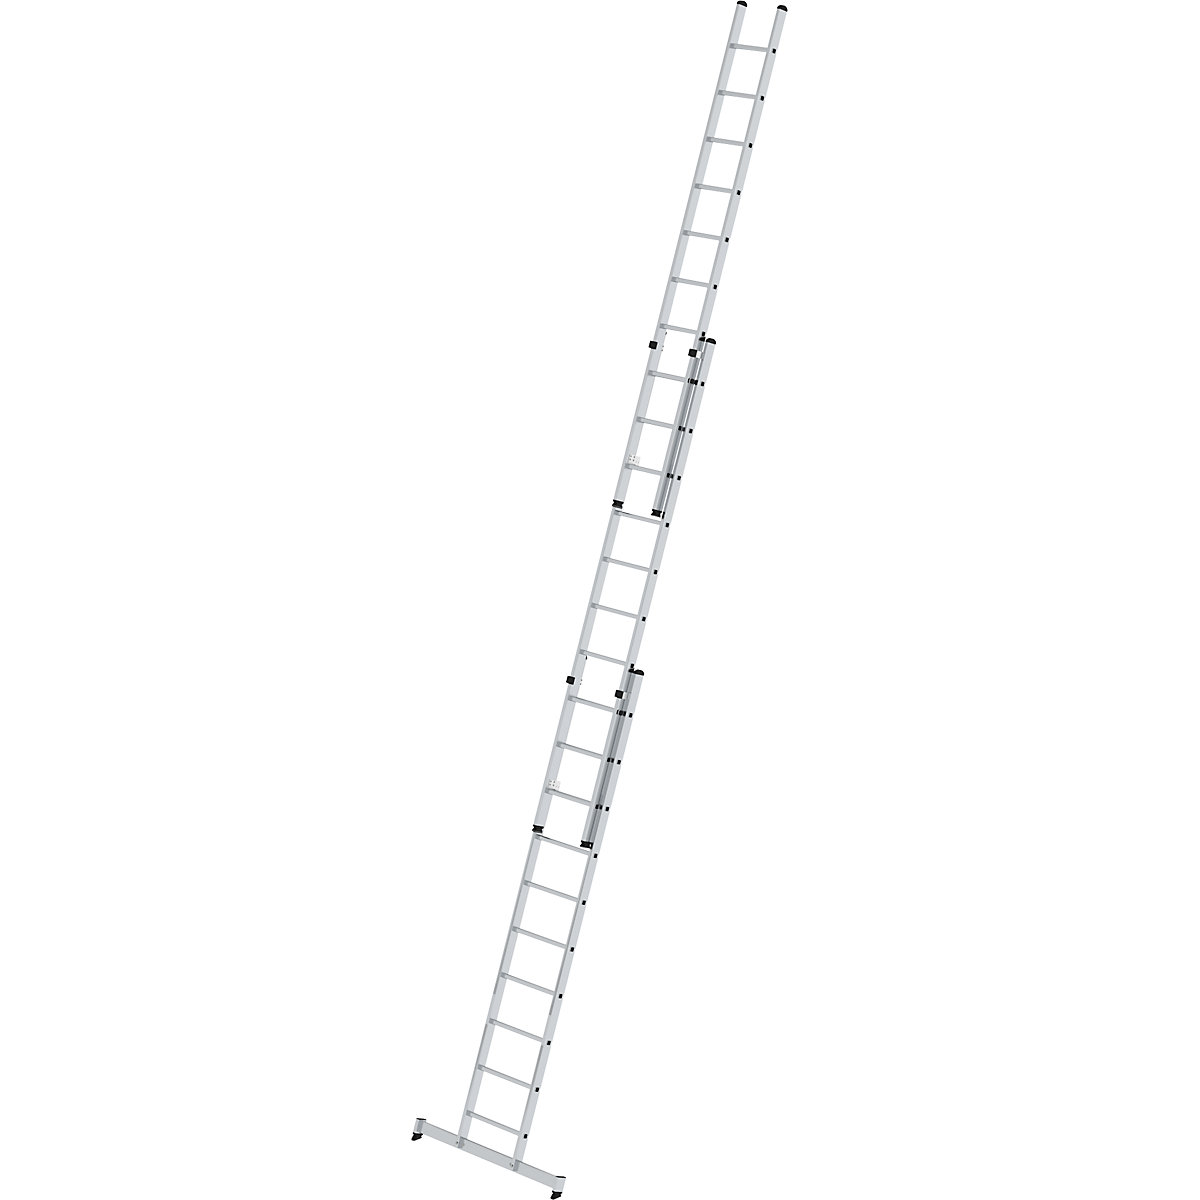 Výškově přestavitelný opěrný žebřík – MUNK, posuvný žebřík, 3dílný s příčníkem nivello®, 3 x 10 příčlí